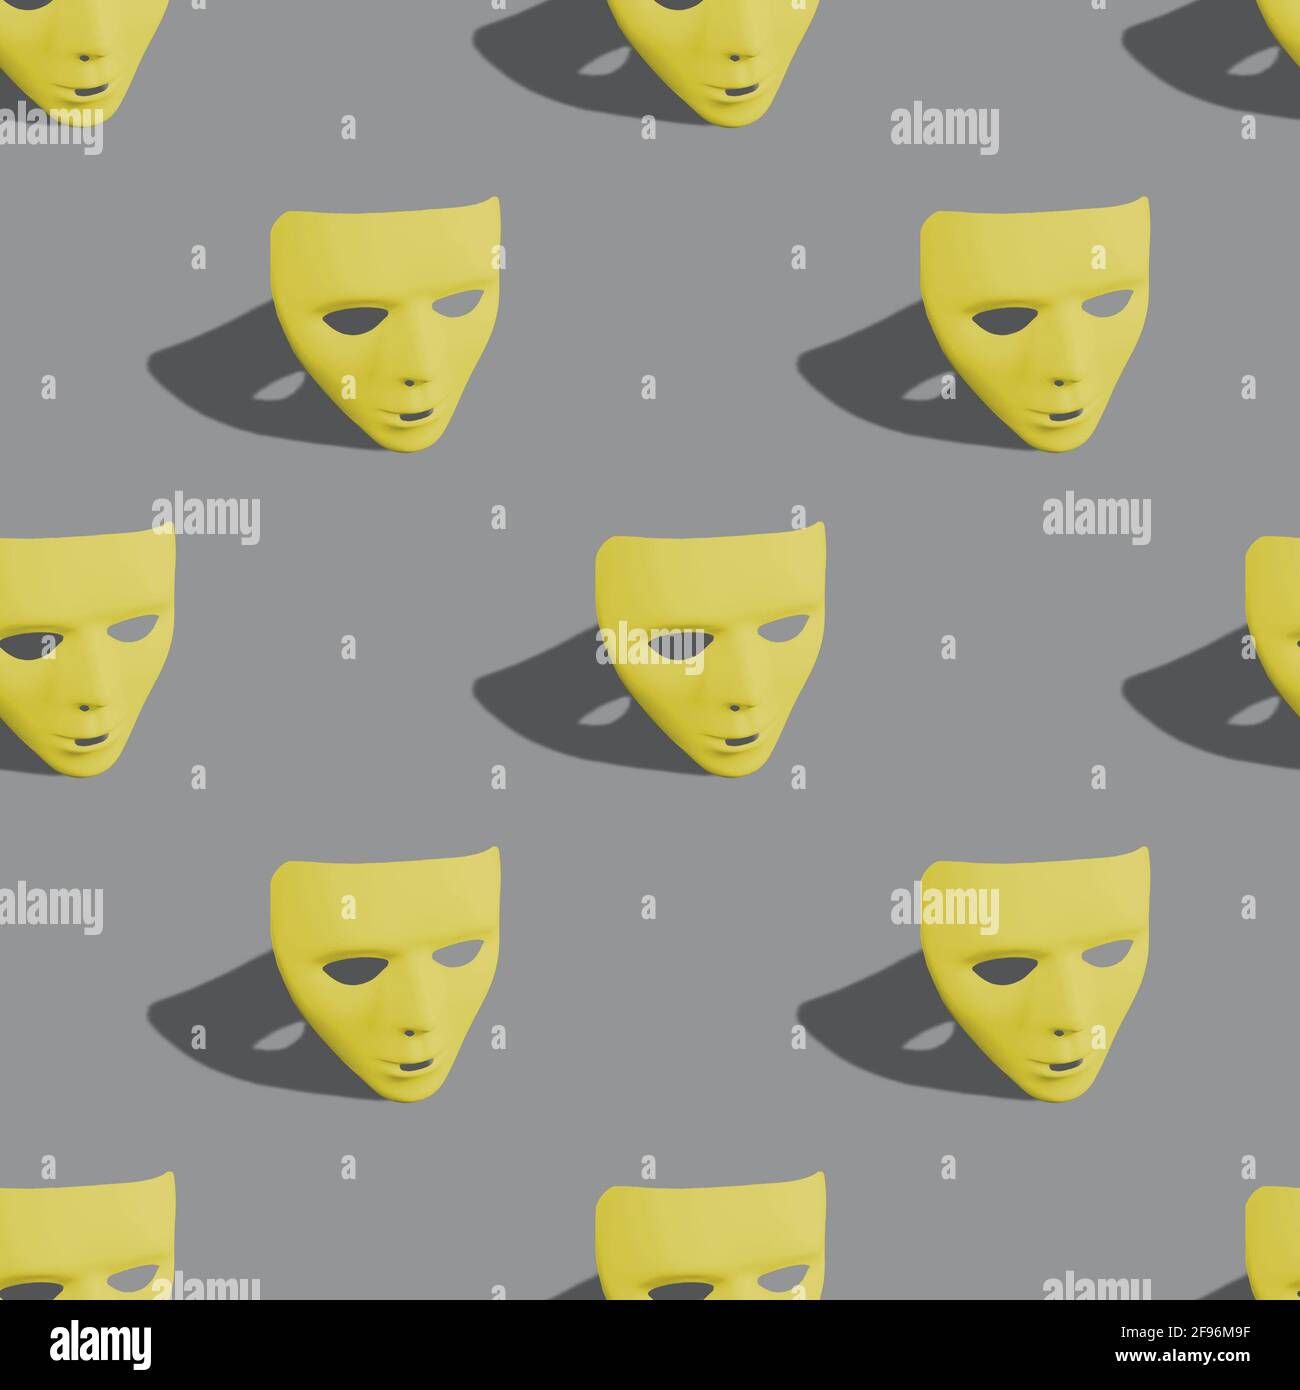 Nahtlose kreative Muster-Layout mit leuchtenden gelben Farbe Karneval Masken auf Ultimate Grey Hintergrund gemacht. Mardi Gras oder Karneval Maske Konzept. Stockfoto